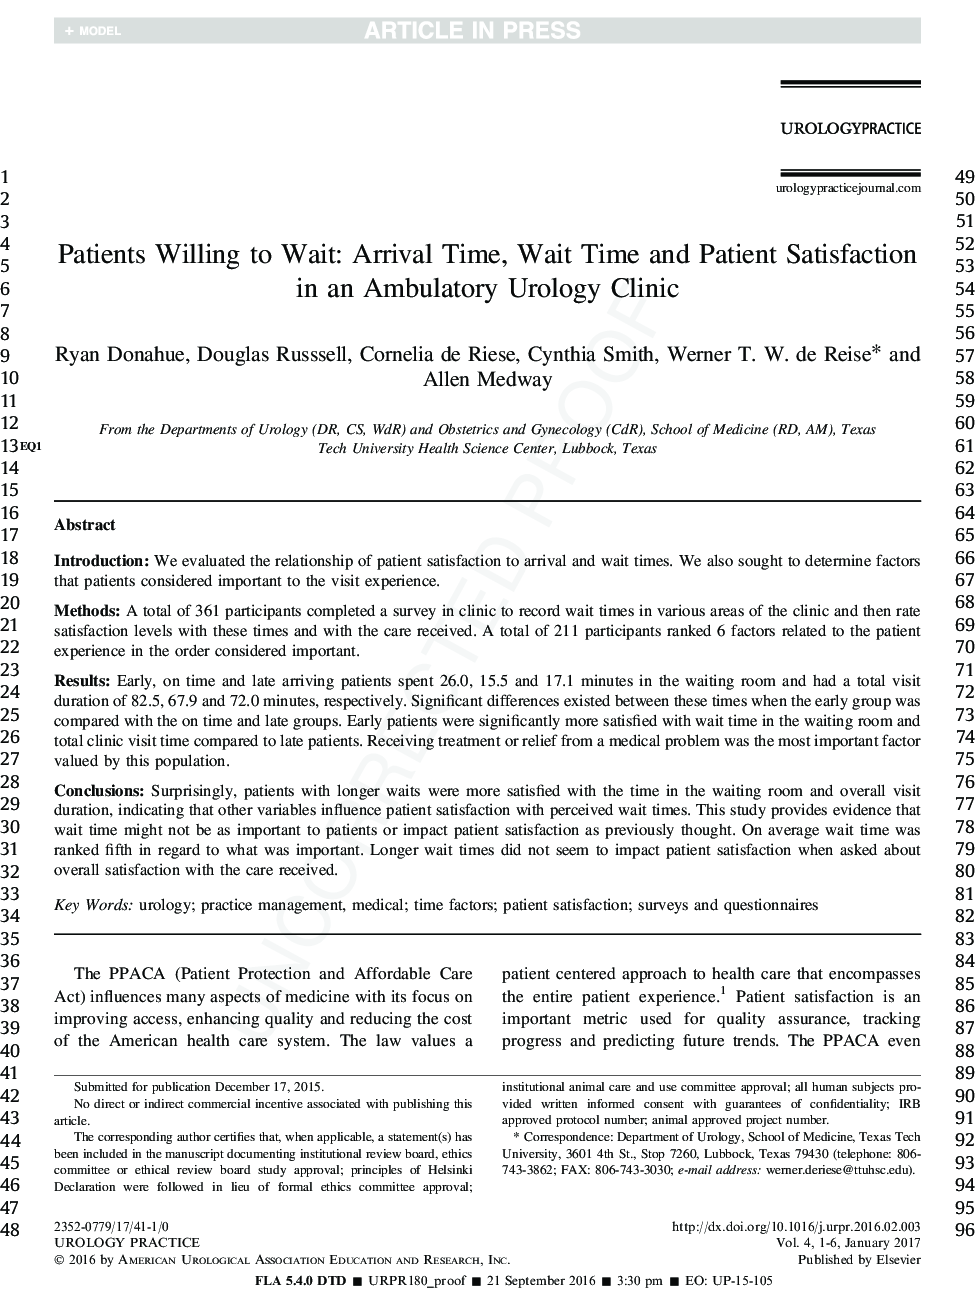 بیمارانی که می خواهند منتظر بمانند: زمان ورود، زمان صبر و رضایت بیمار در درمانگاه اورولوژی اورژانس 